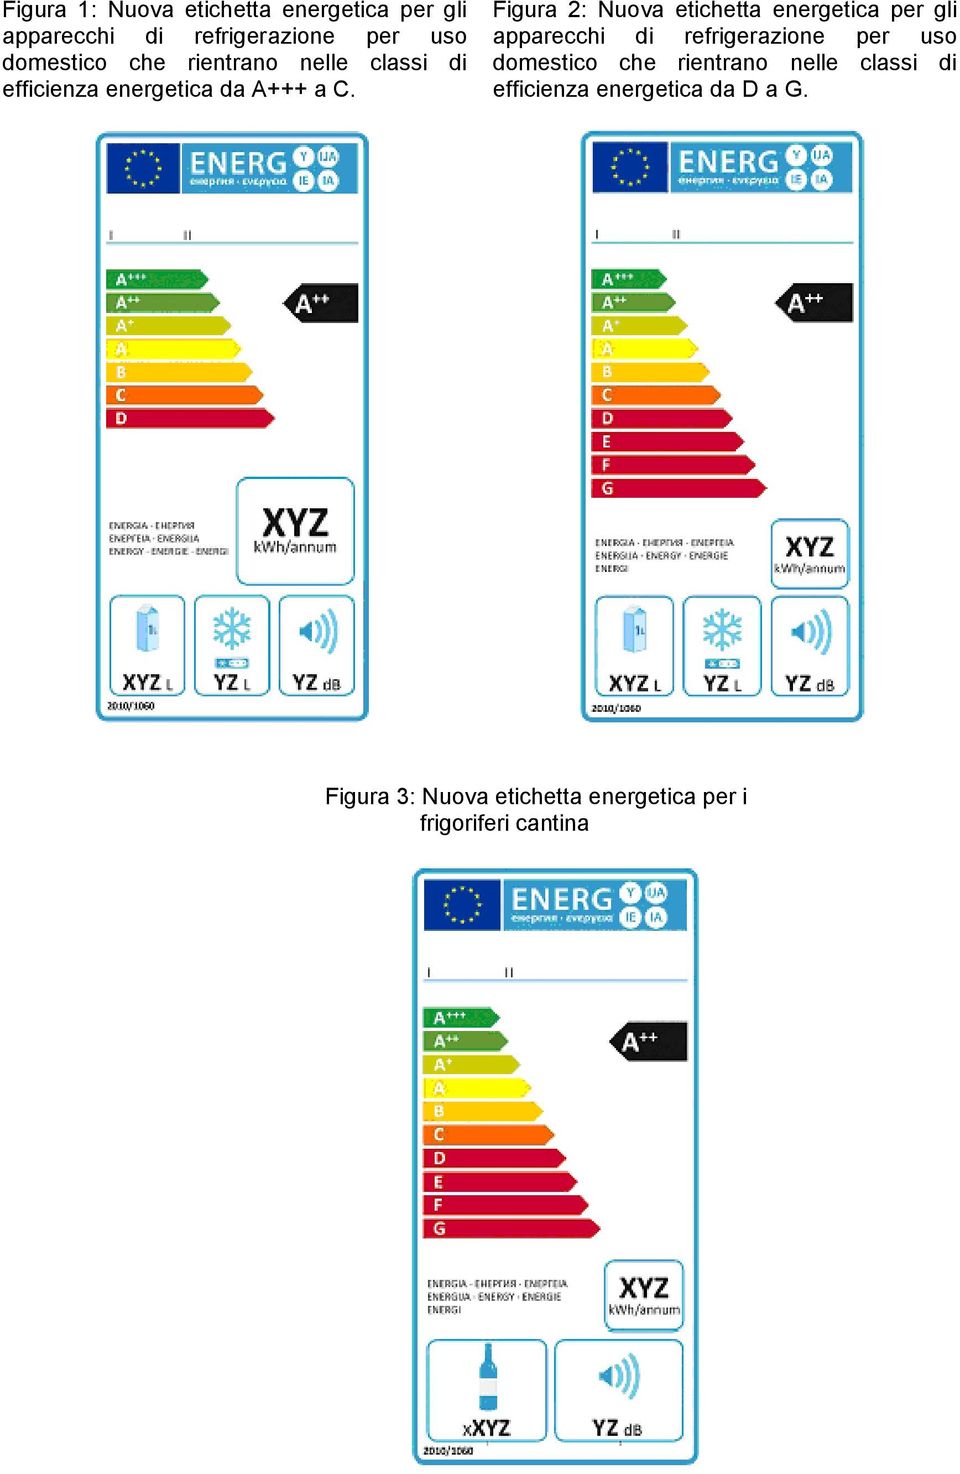 Figura 2: Nuova etichetta energetica per gli apparecchi di refrigerazione per uso domestico